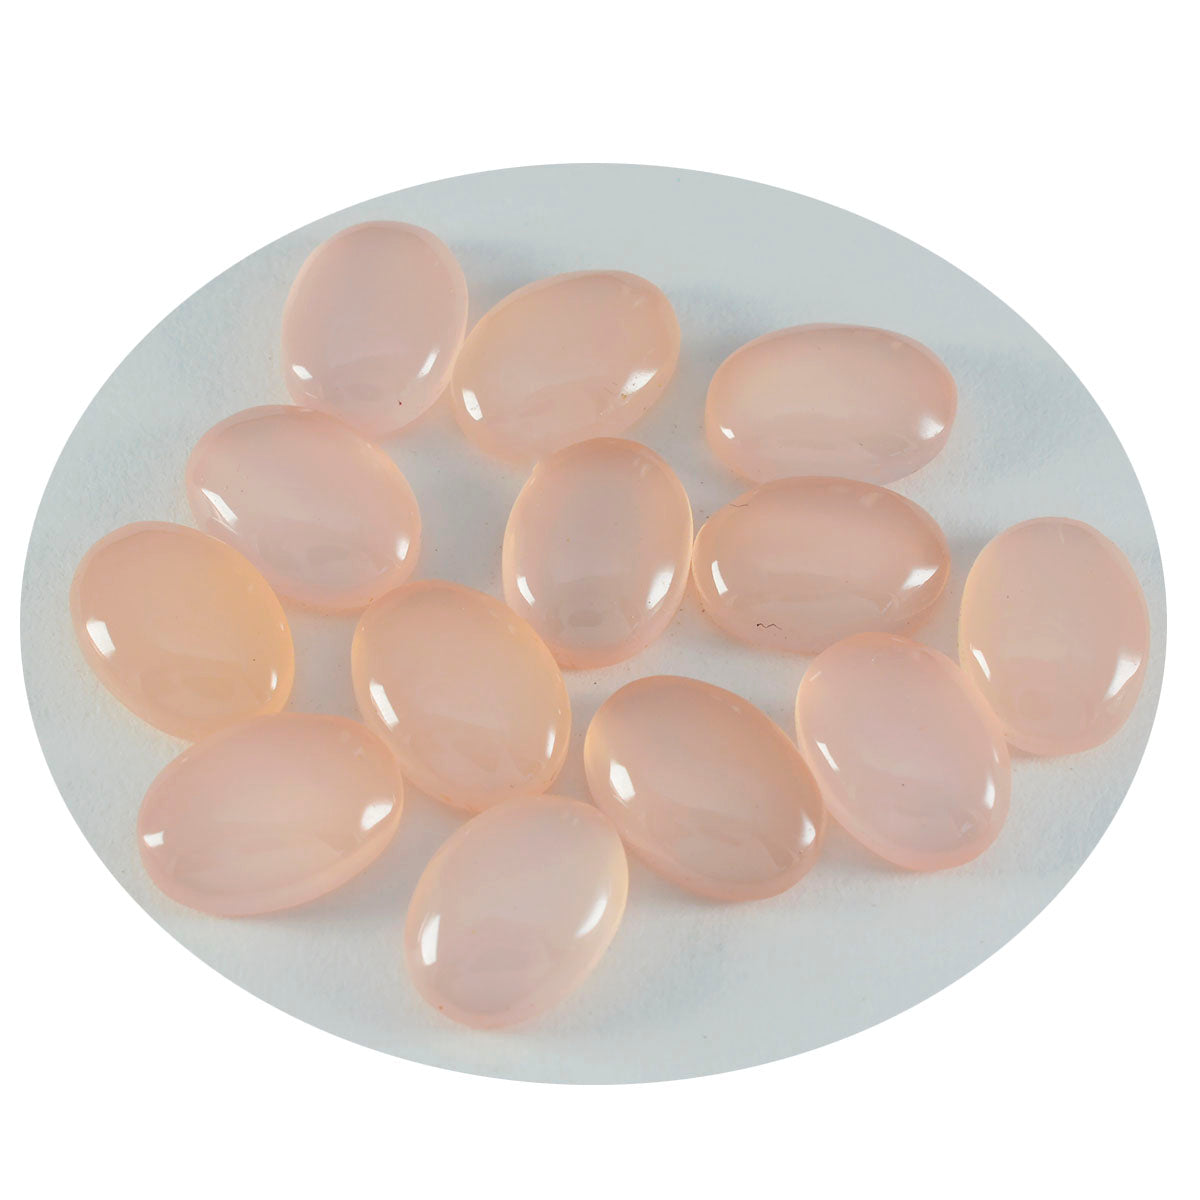 Riyogems 1PC roze rozenkwarts cabochon 8x10 mm ovale vorm geweldige kwaliteit losse steen